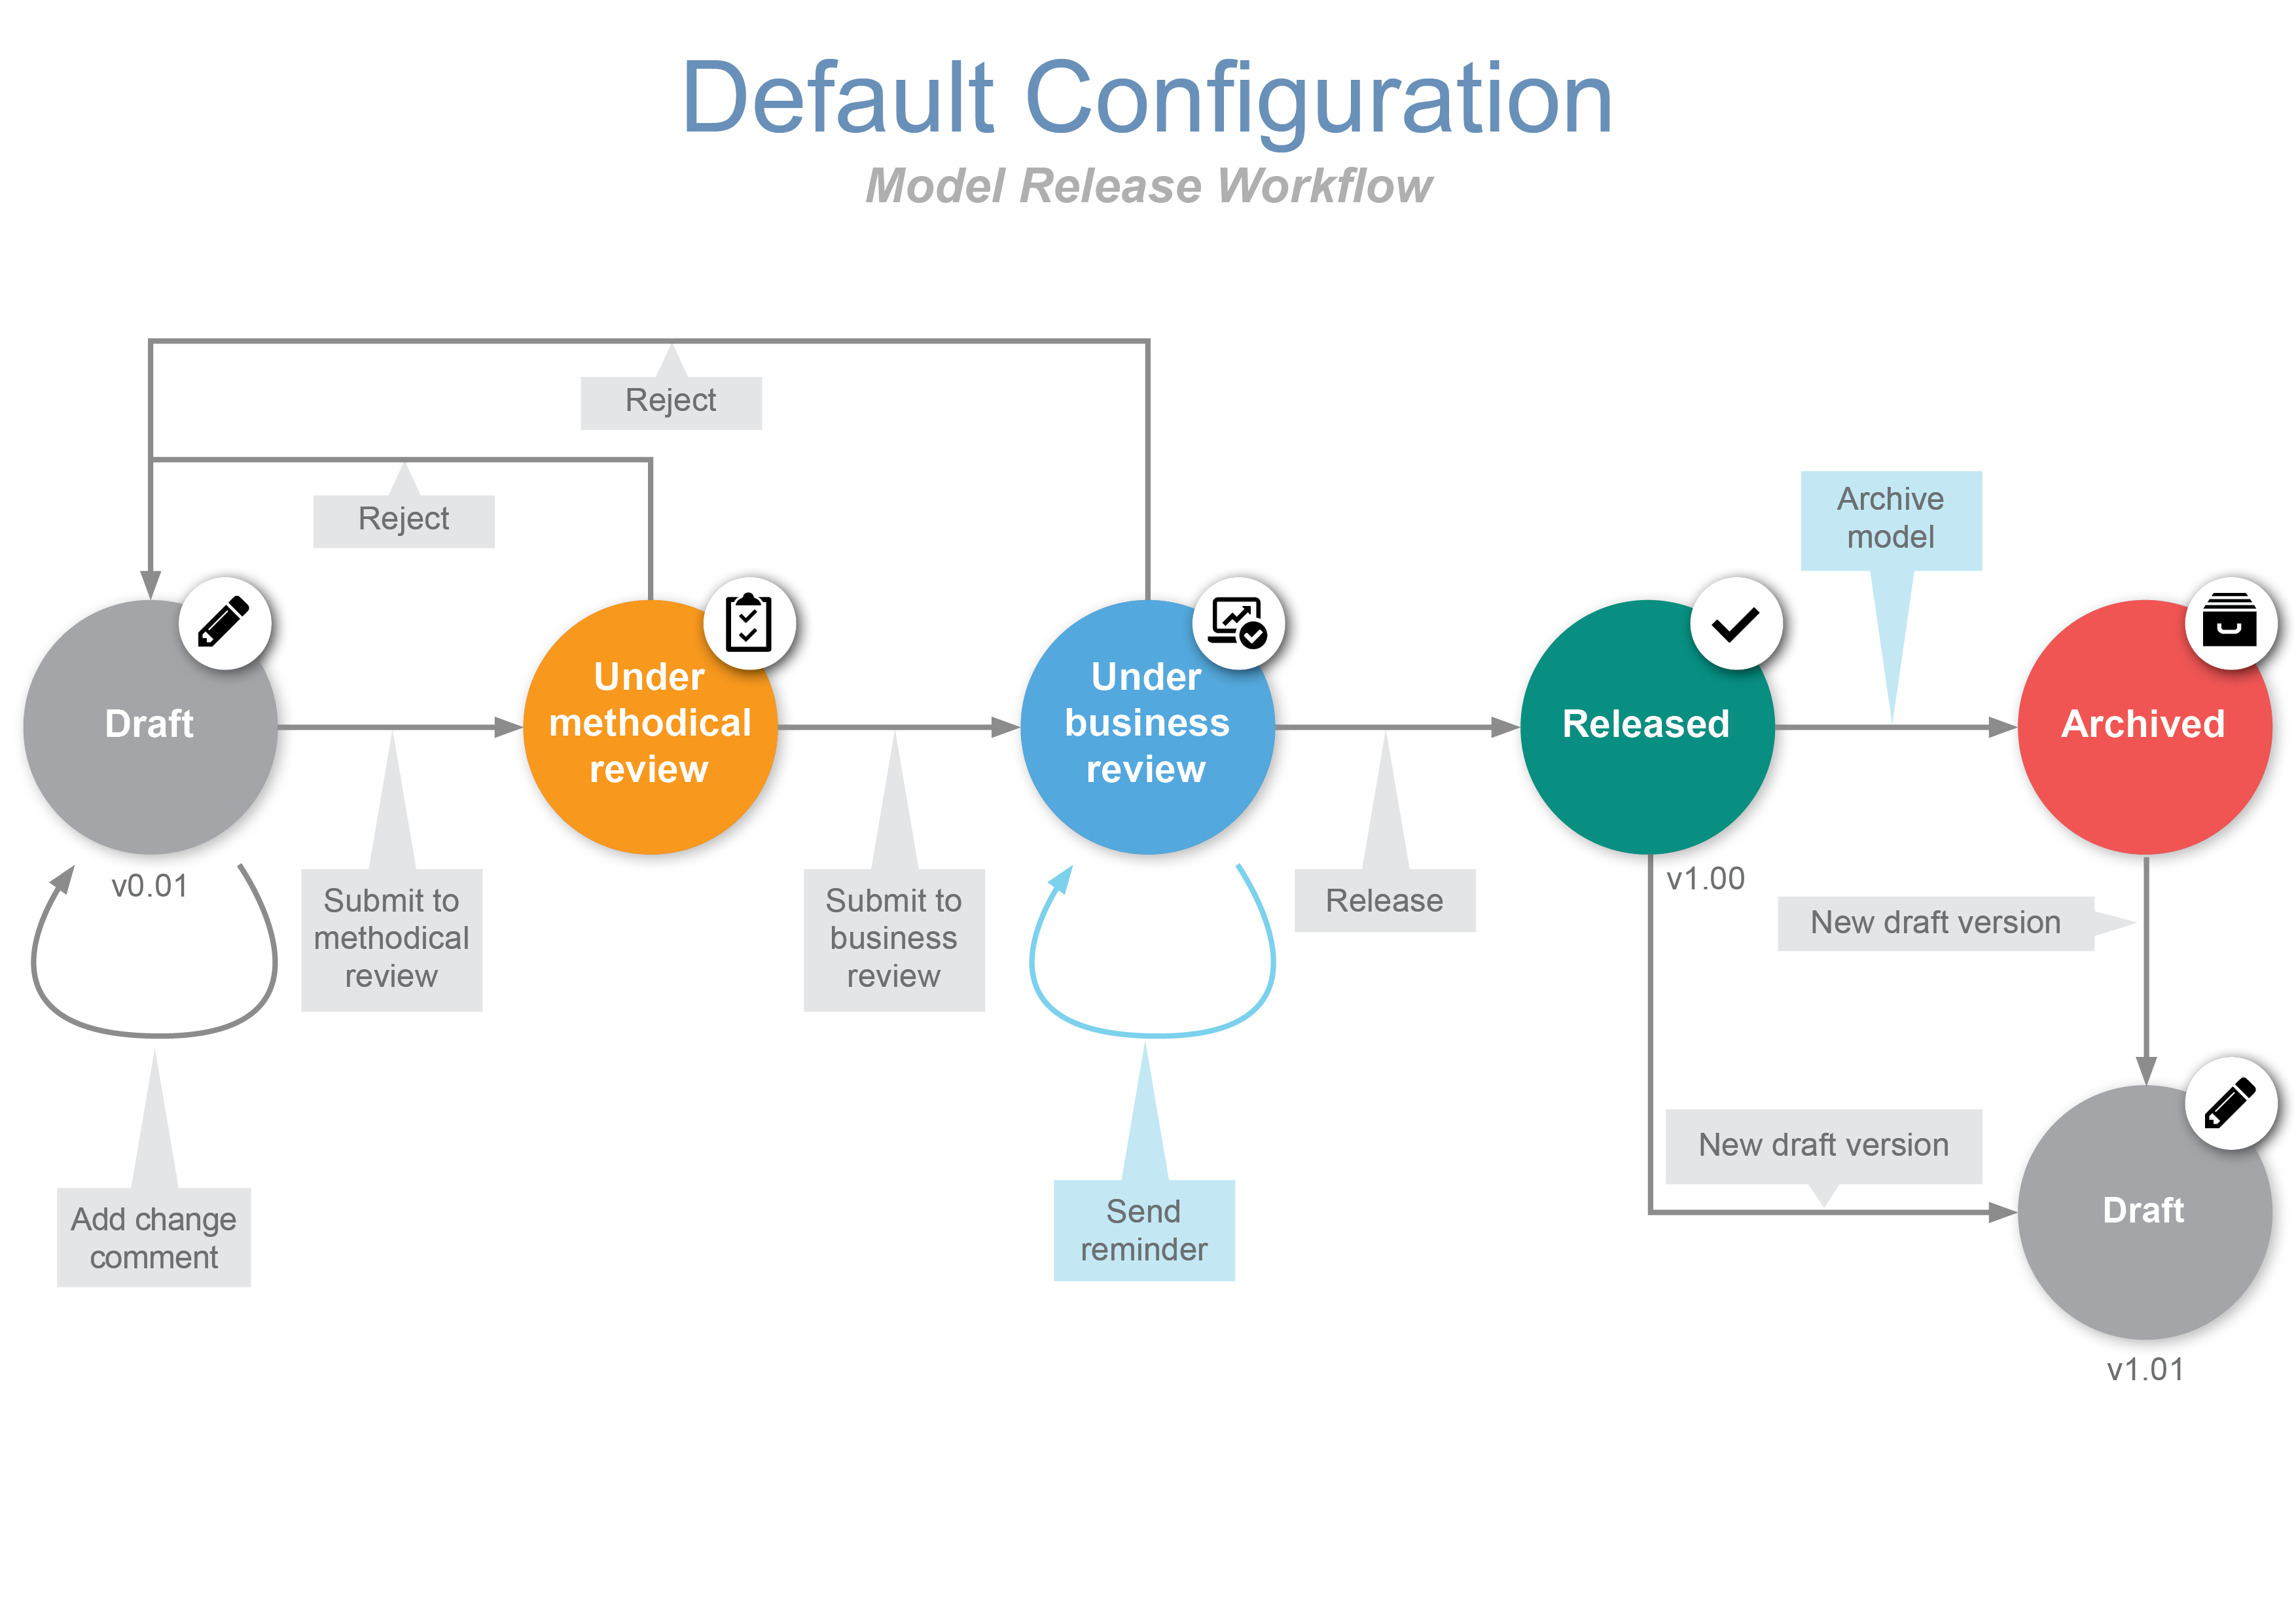 Default configuration improvements